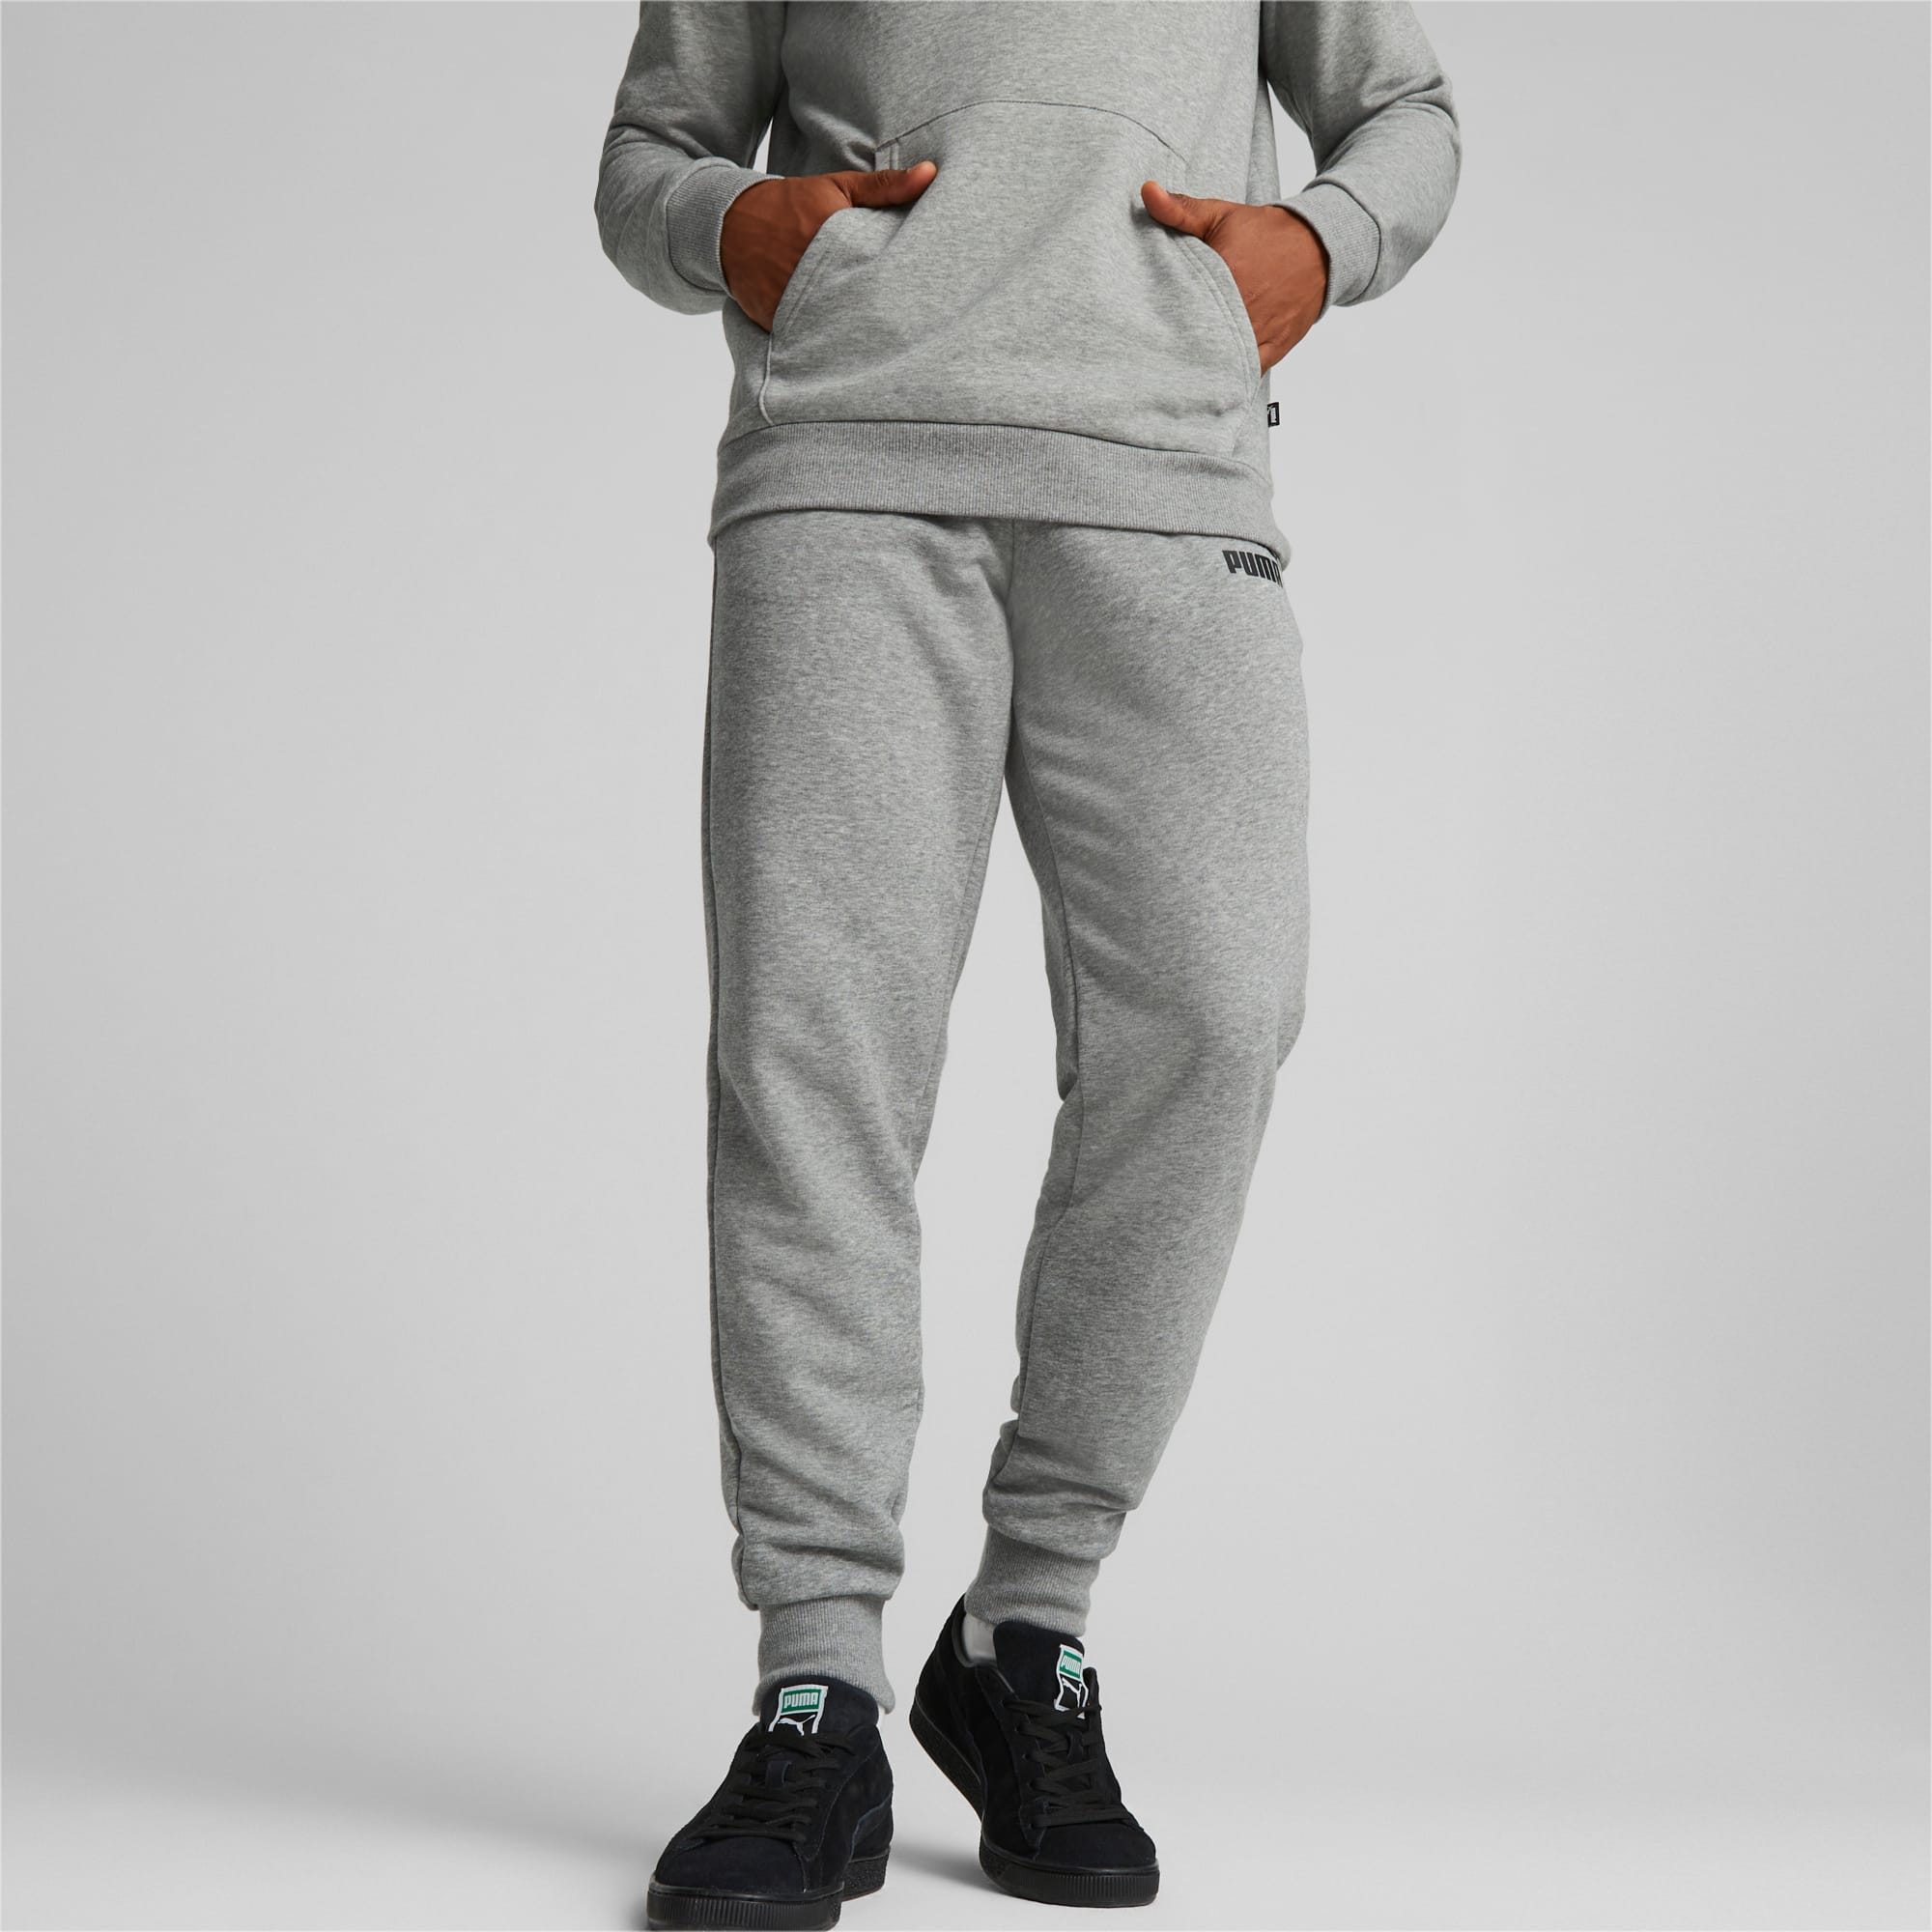 PUMA Pantalon de survêtement Essentials Logo homme, Gris/Bruyère, Taille L, Vêtements